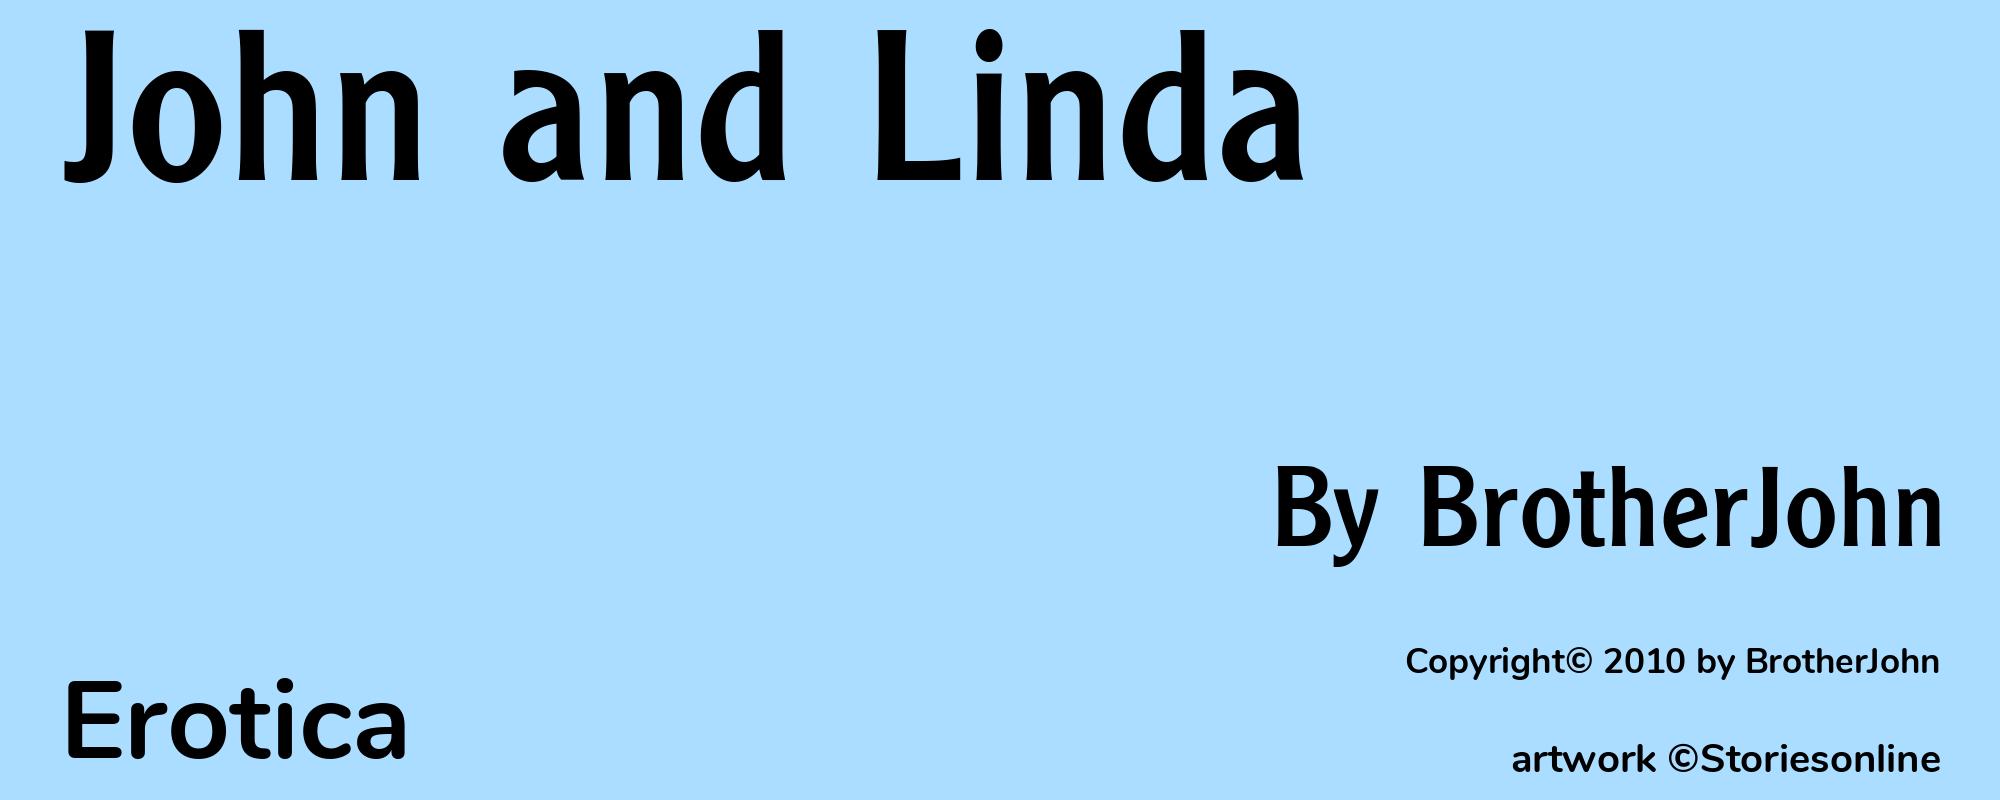 John and Linda - Cover